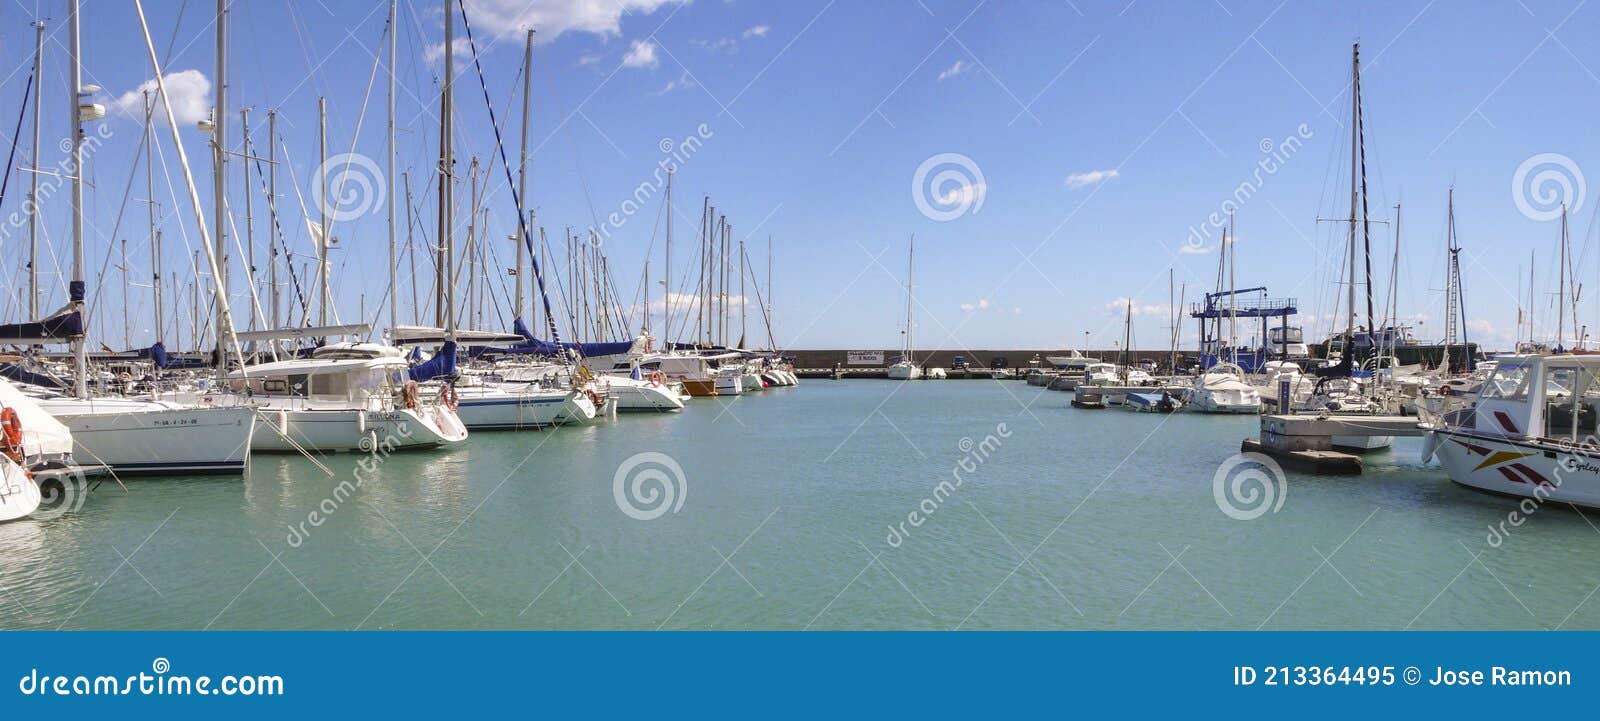 Barcos Y Yates Turísticos Amarrados En Un Puerto Deportivo De Canet De  Berenguer Valencia España. Imagen editorial - Imagen de vela, ciudad:  213364495